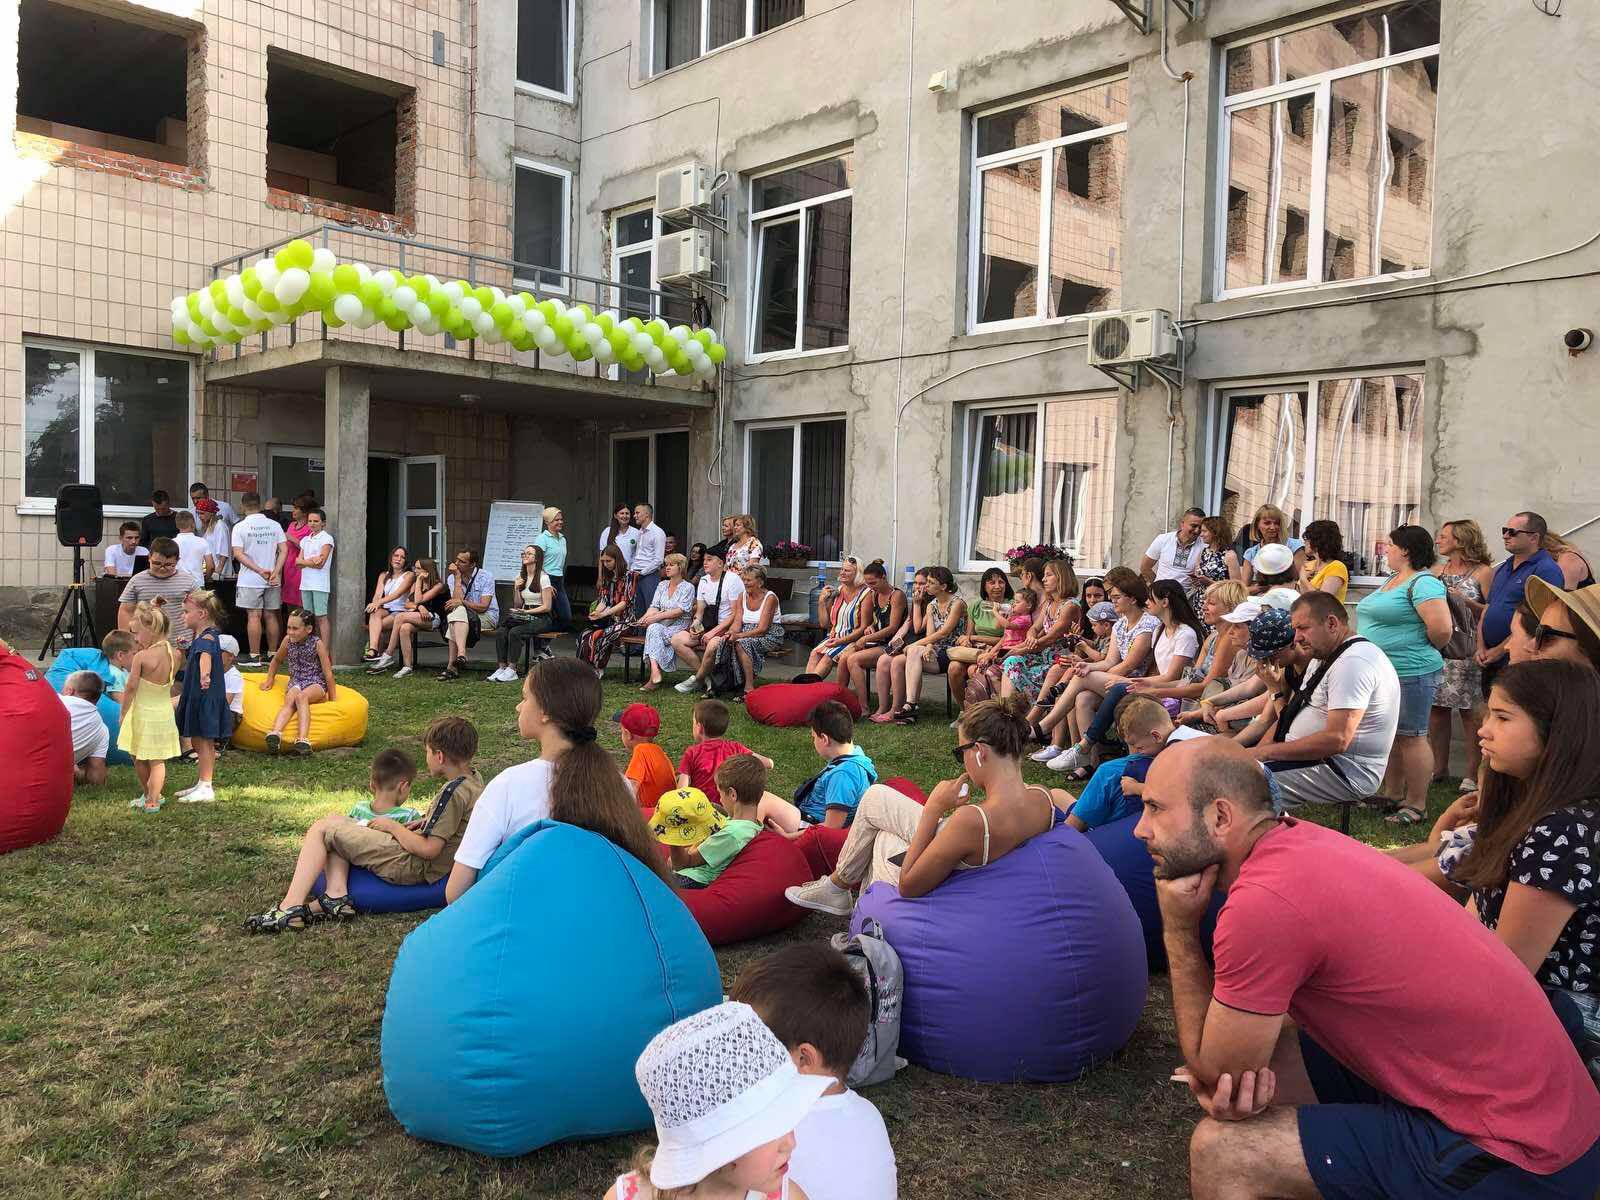 PLACE FOR TEENS: у Луцьку відкрили новий молодіжний простір (фото)